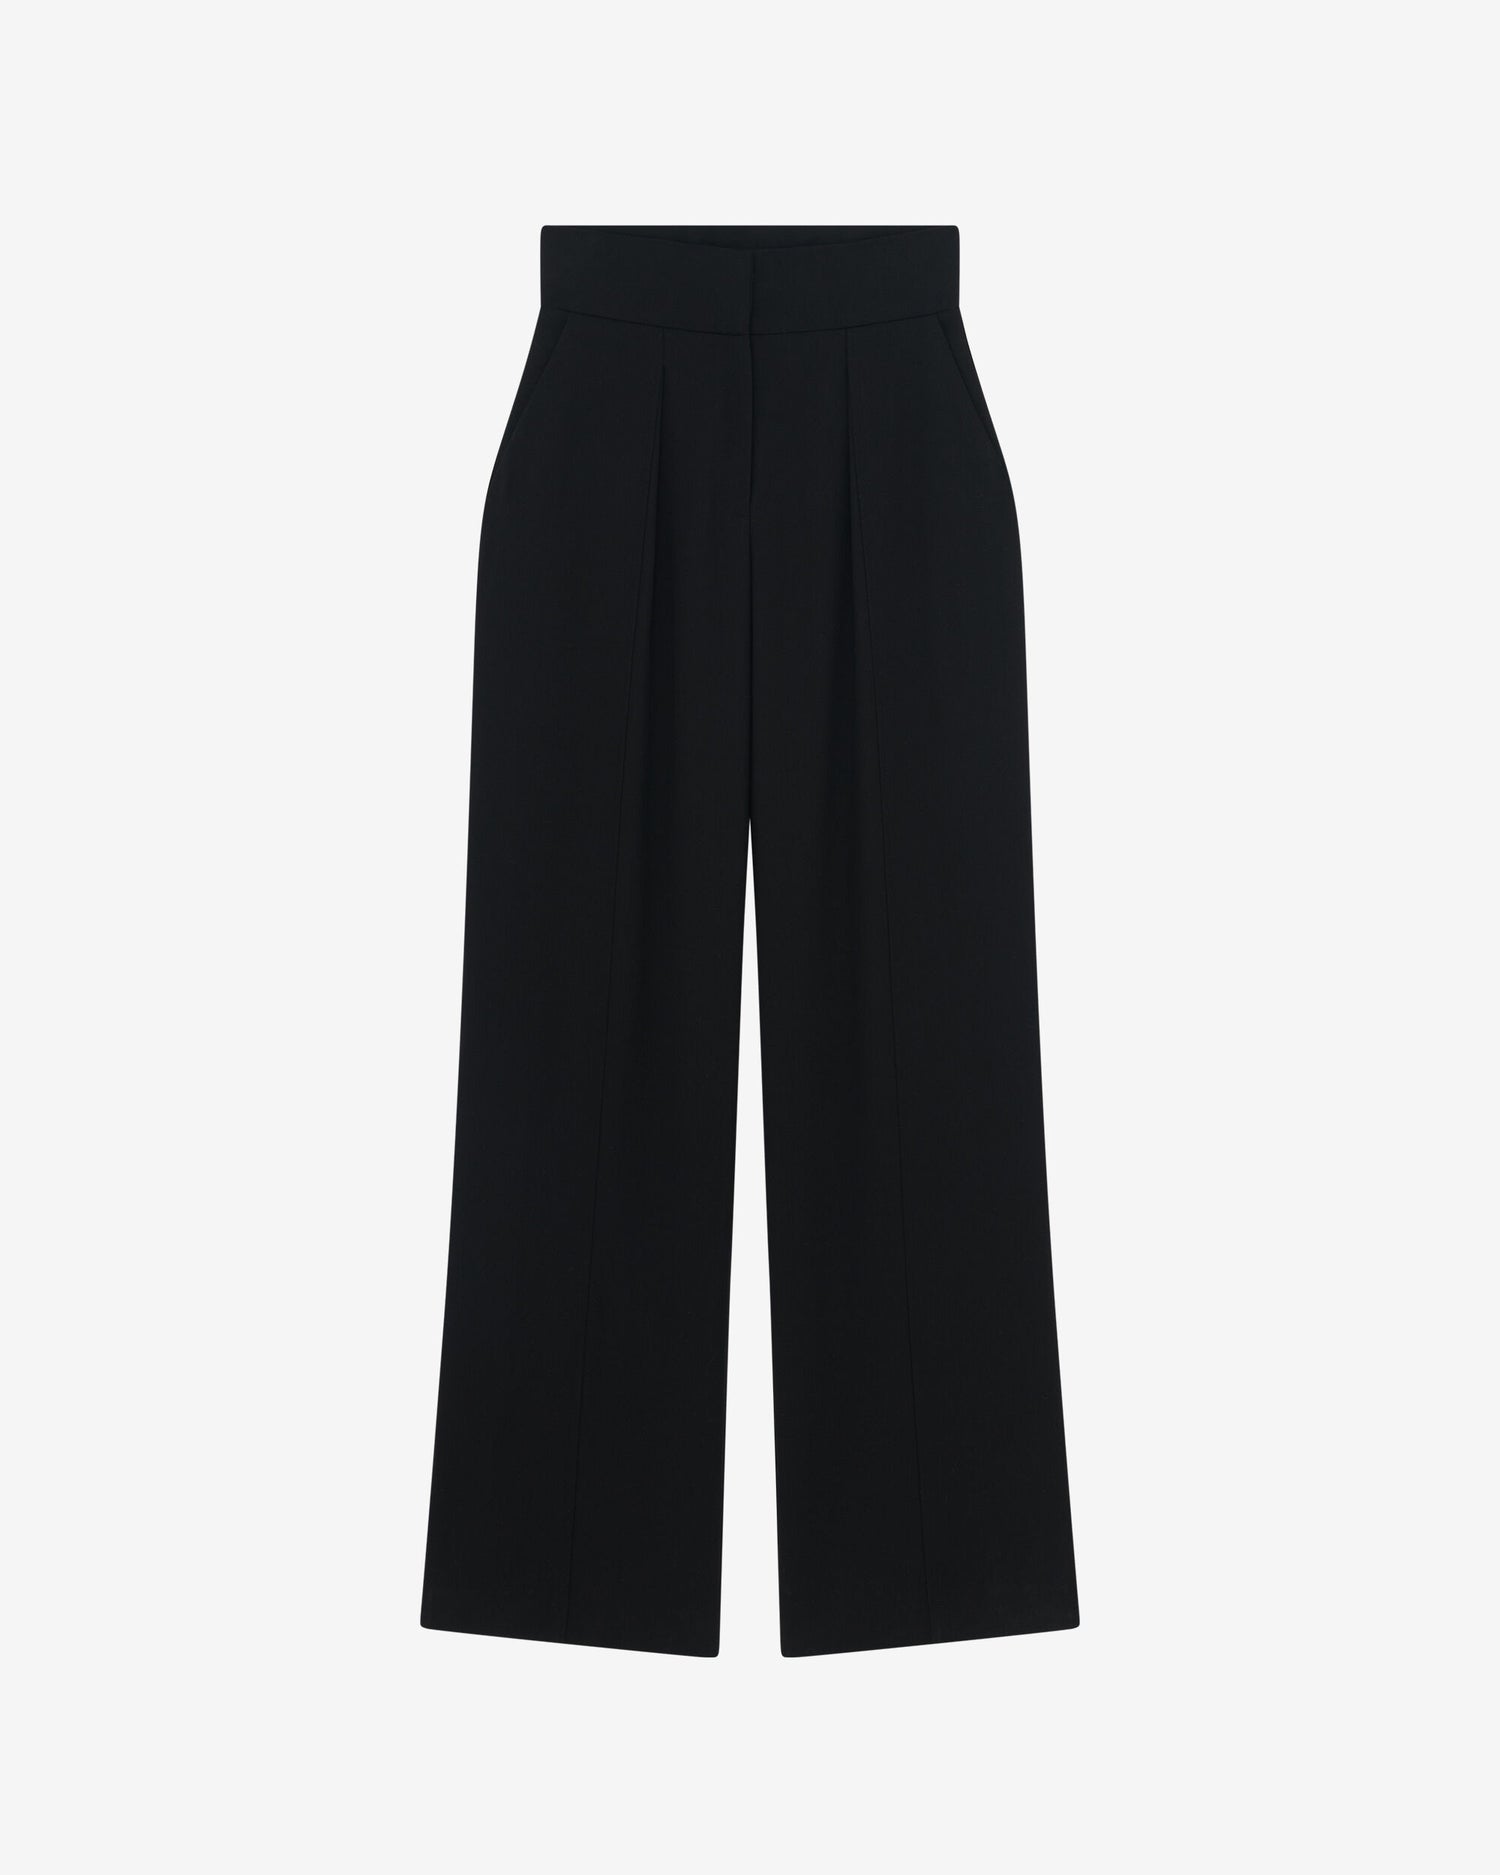 KAIRI high-waist straight cut trousers, black